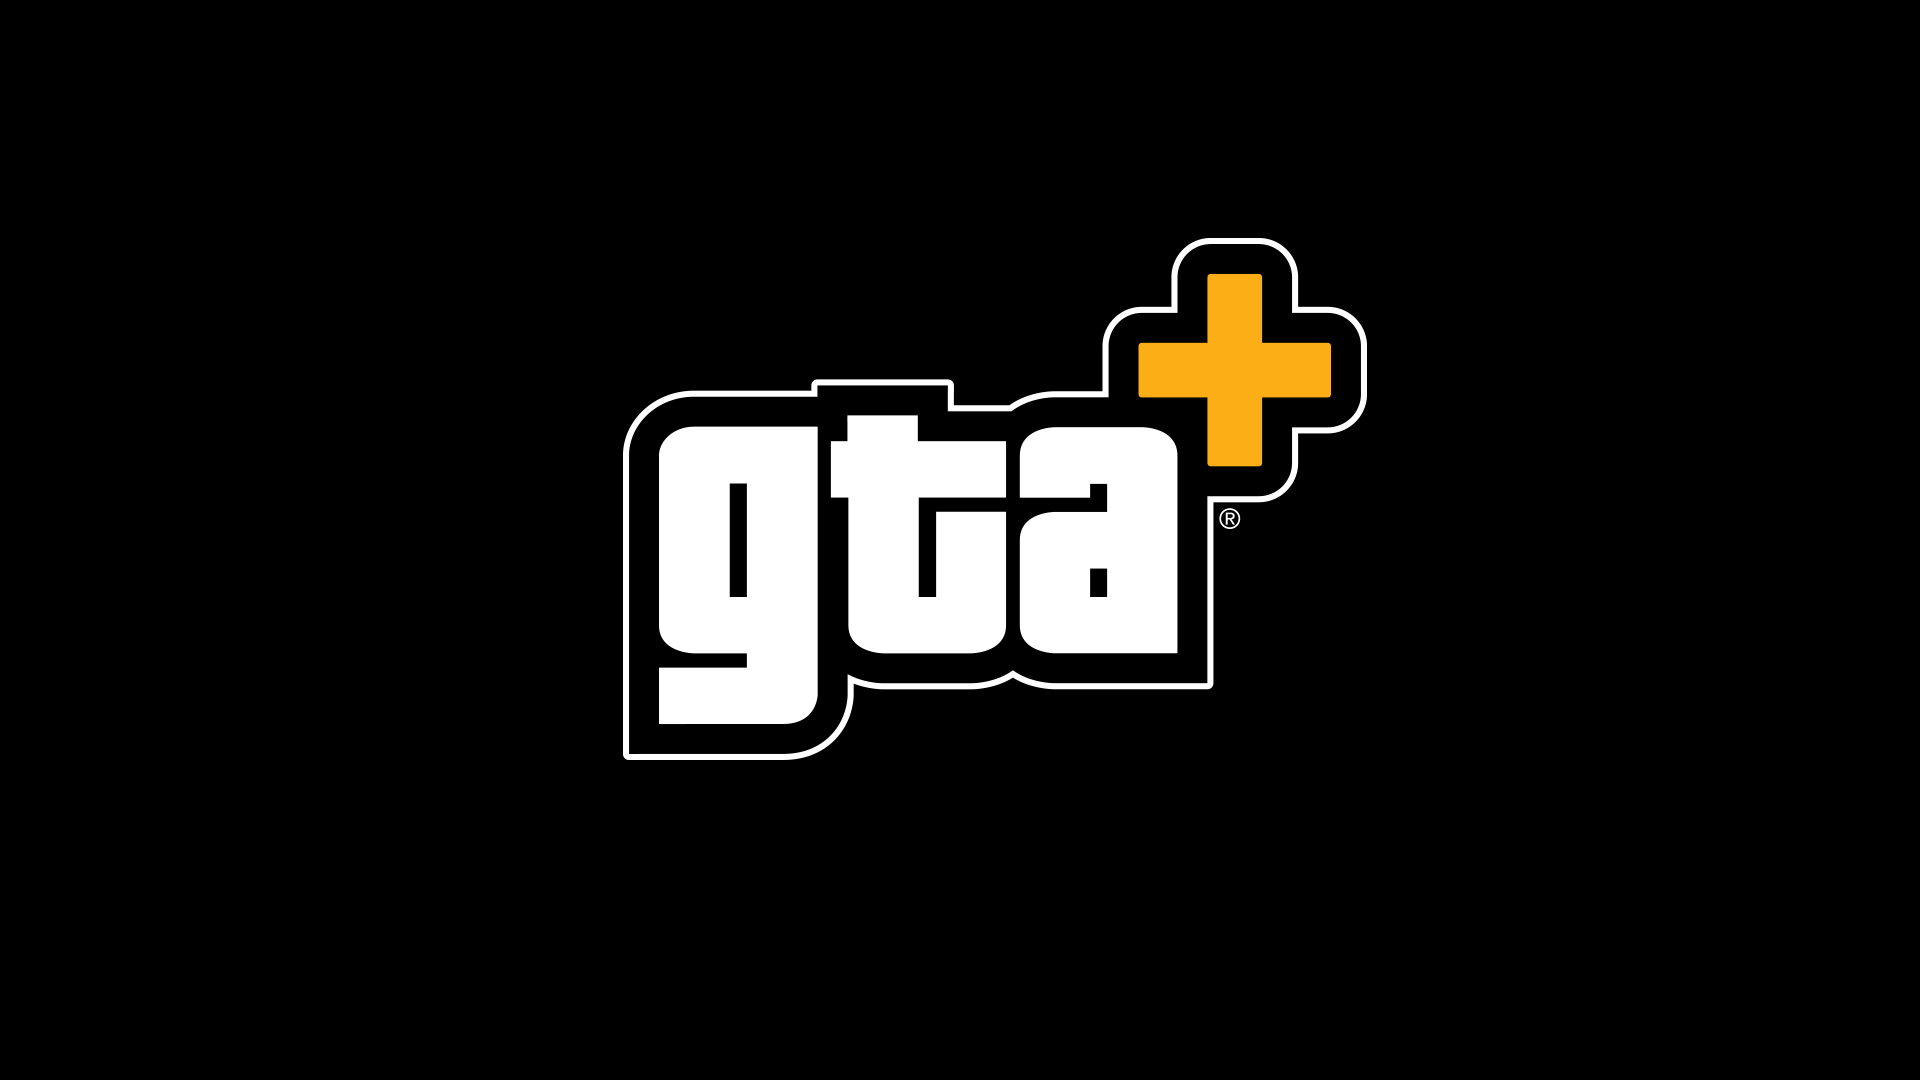 Pour plus d'informations sur les derniers avantages de GTA+, rendez-vous sur https://rockstargames.com/gtaplus